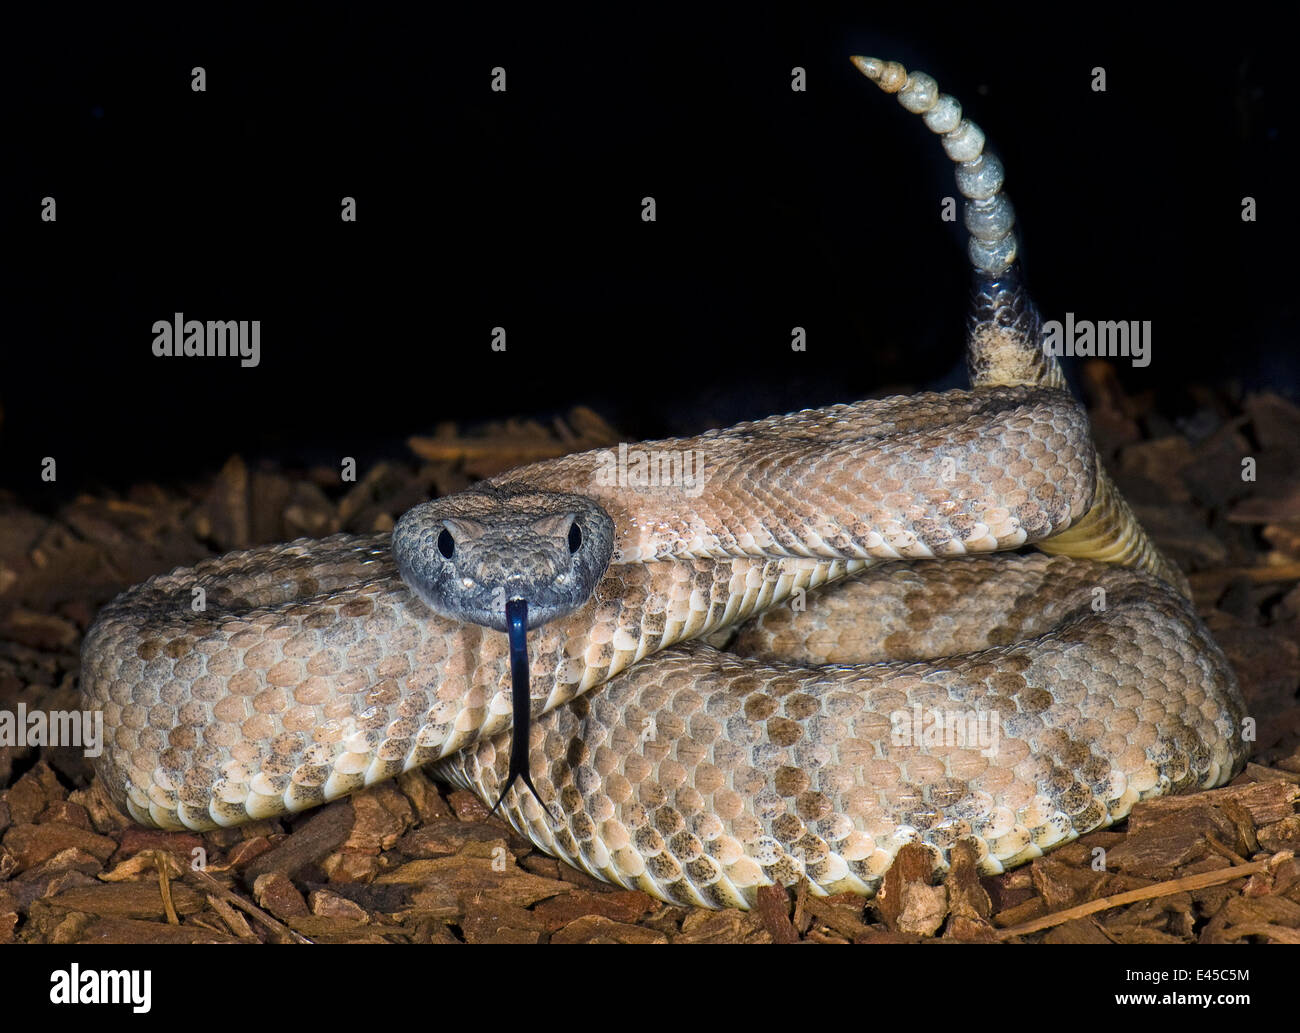 Sidewinder Mojave rattlesnake avec clignotement de la langue et de cliquetis soulevées Crotalus Cerastes cerastes} {from California, USA en captivité Banque D'Images